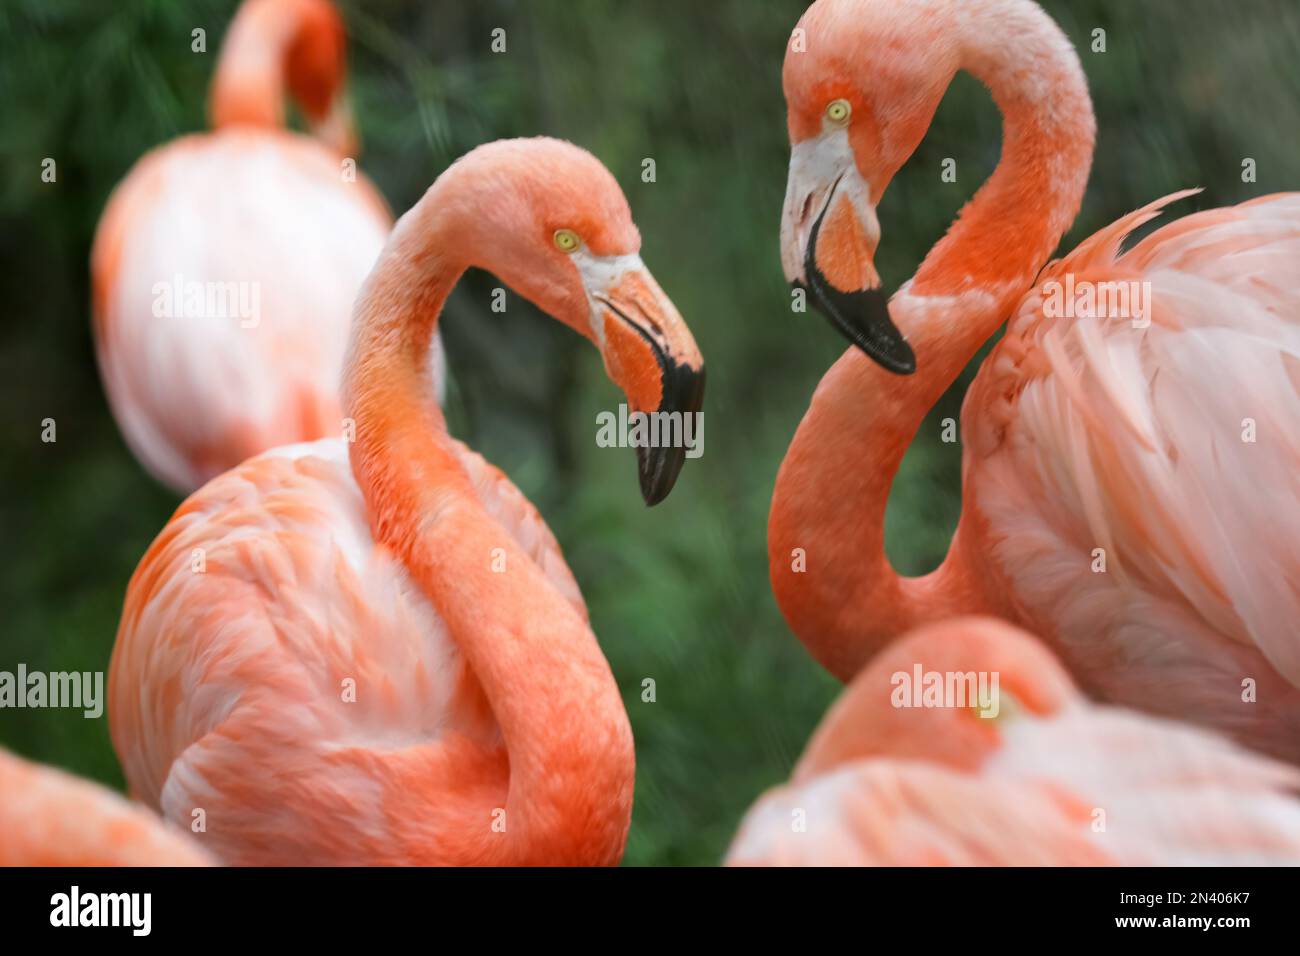 Les flamants roses ou flamants roses sont un type d'oiseau de passage à gué dans la famille des Phénicoptéridae, qui est la seule famille existante dans l'ordre des Phénicoptériformes. Banque D'Images